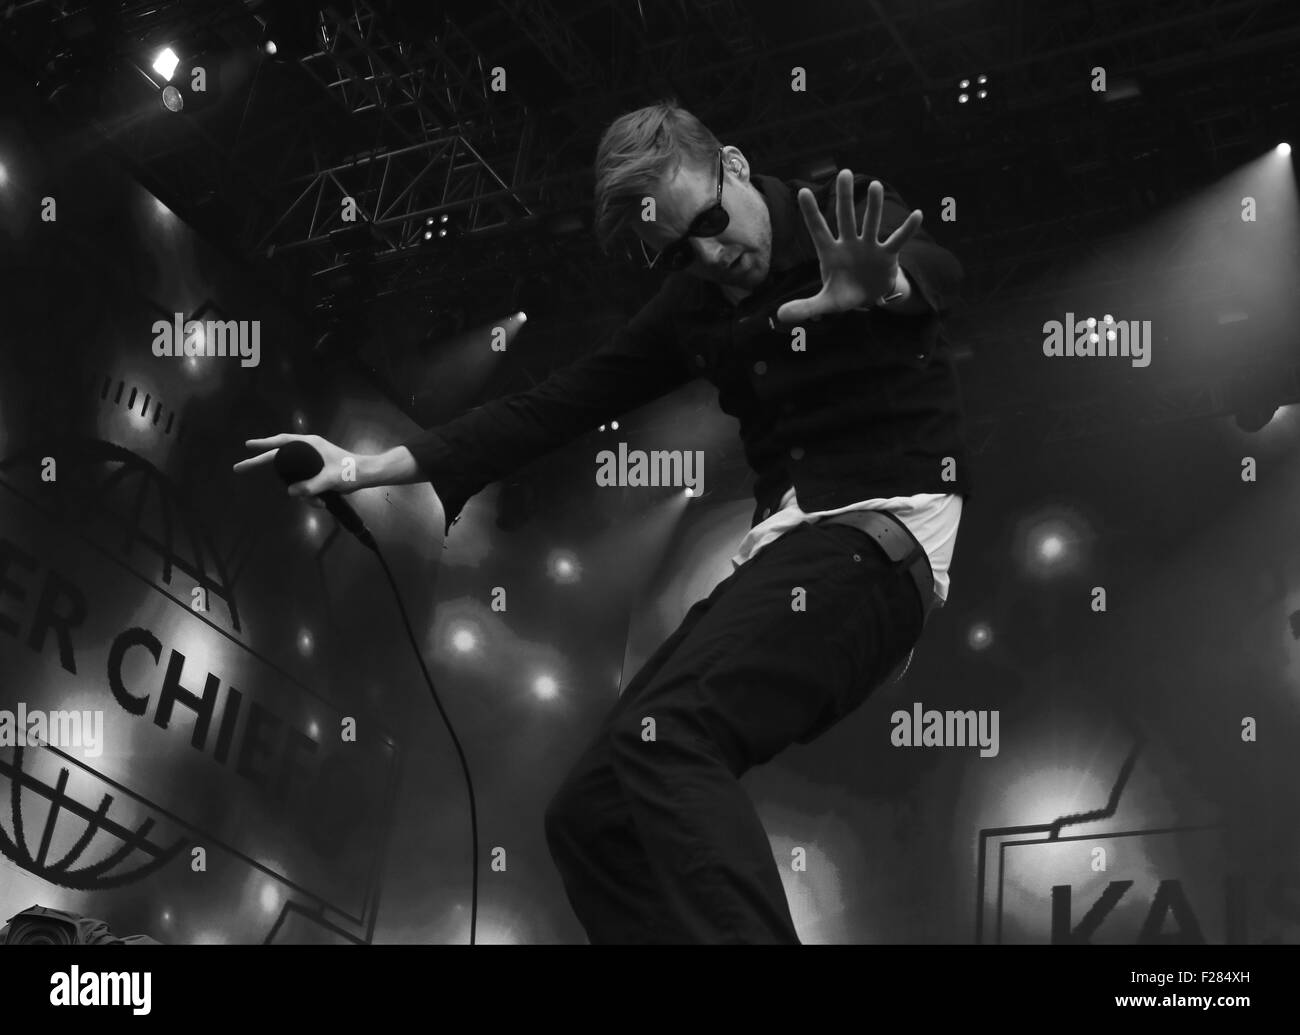 Londres, Royaume-Uni, 26 juin 2015 : Kaiser Chiefs Ricky Wilson ( ce fichier a été modifié numériquement à monochrome ) sur la scène du Br Banque D'Images